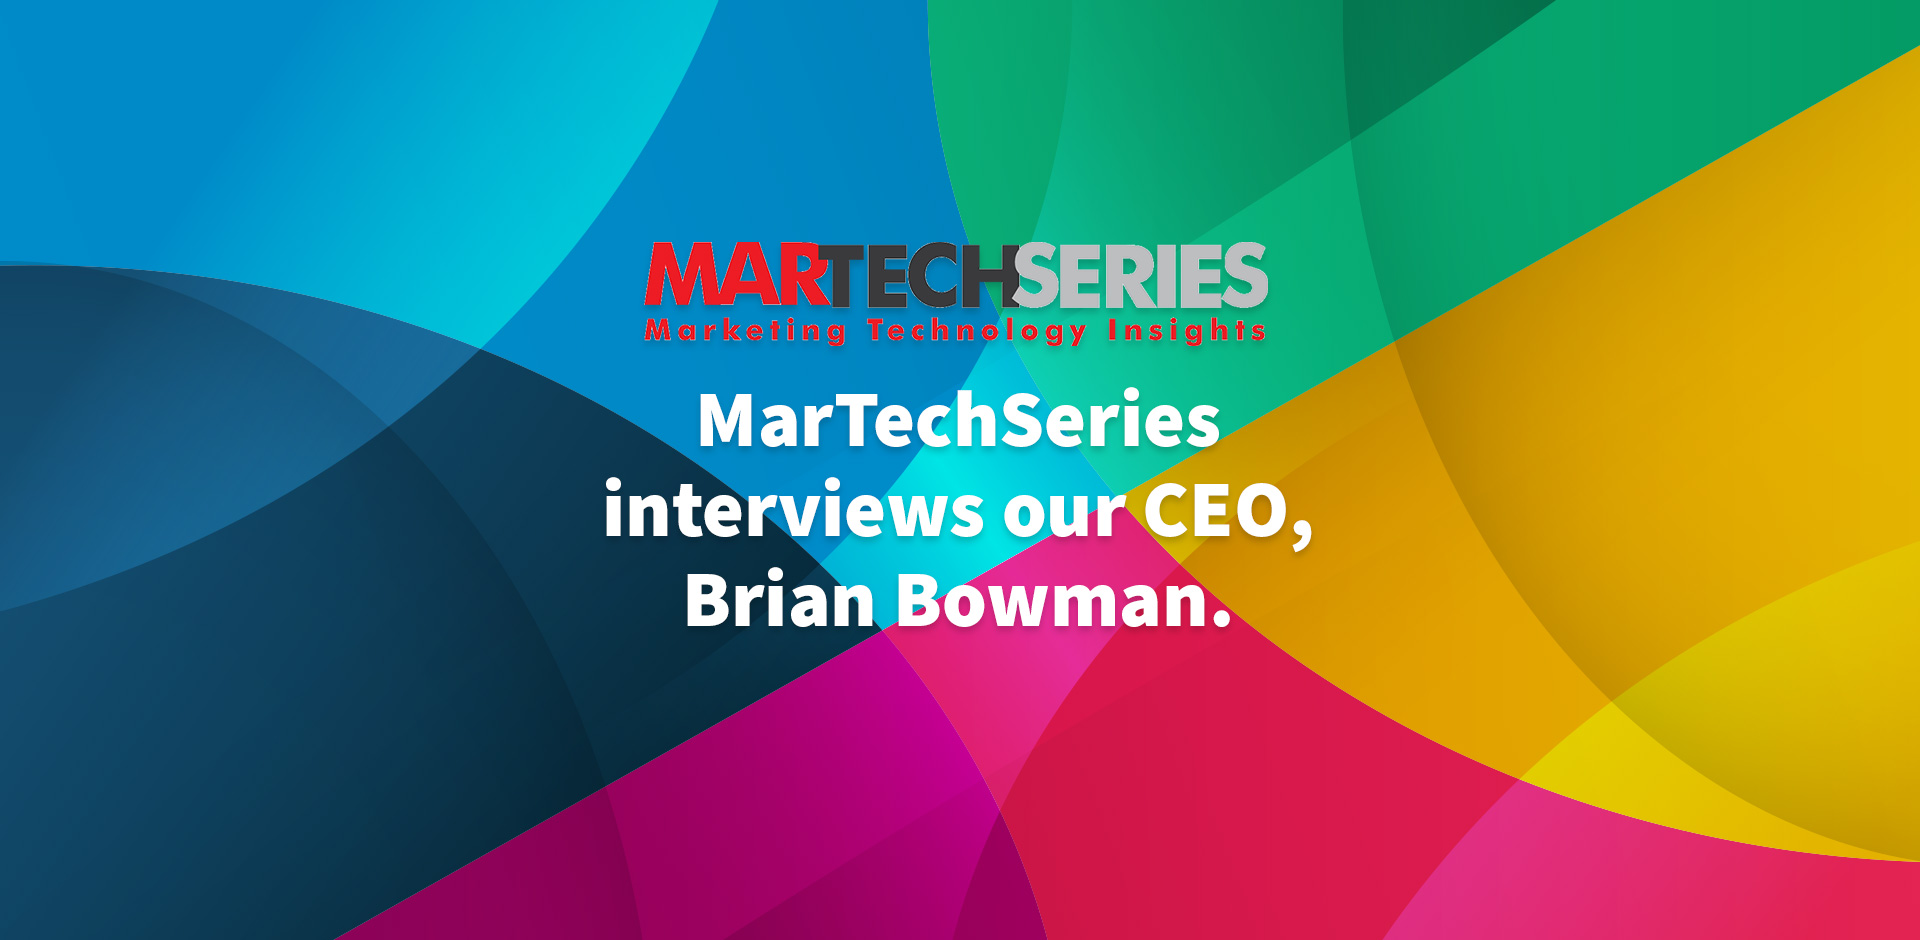 MarTechSeries interviews our CEO, Brian Bowman.